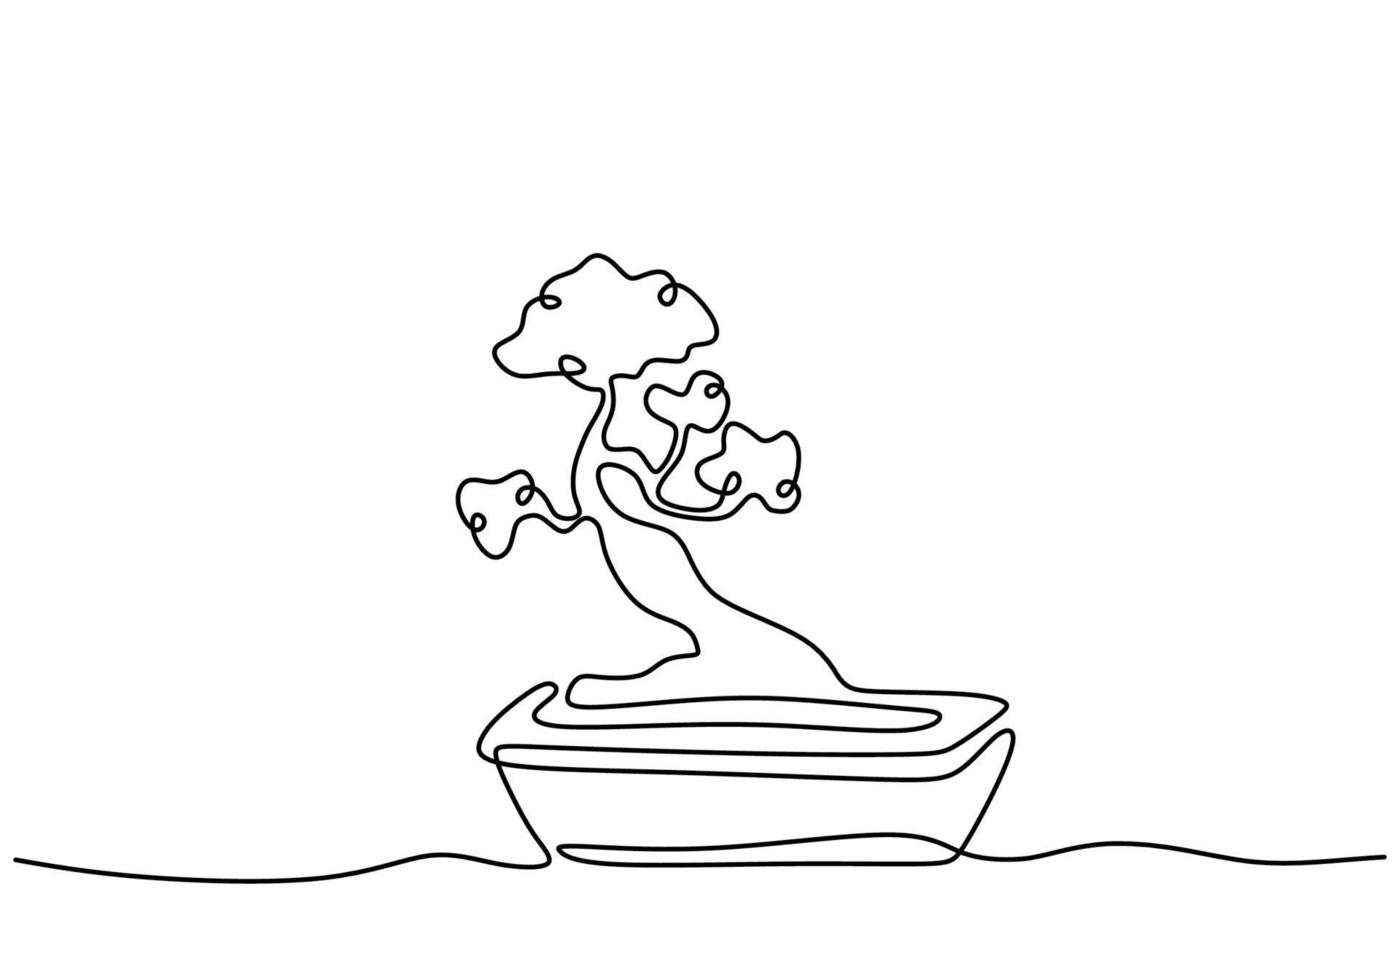 un bonsaï en pot un vecteur de dessin au trait continu isolé sur fond blanc avec un design minimal. plantes miniatures anciennes décoratives pour la décoration intérieure de la maison. concept de plante d'intérieur